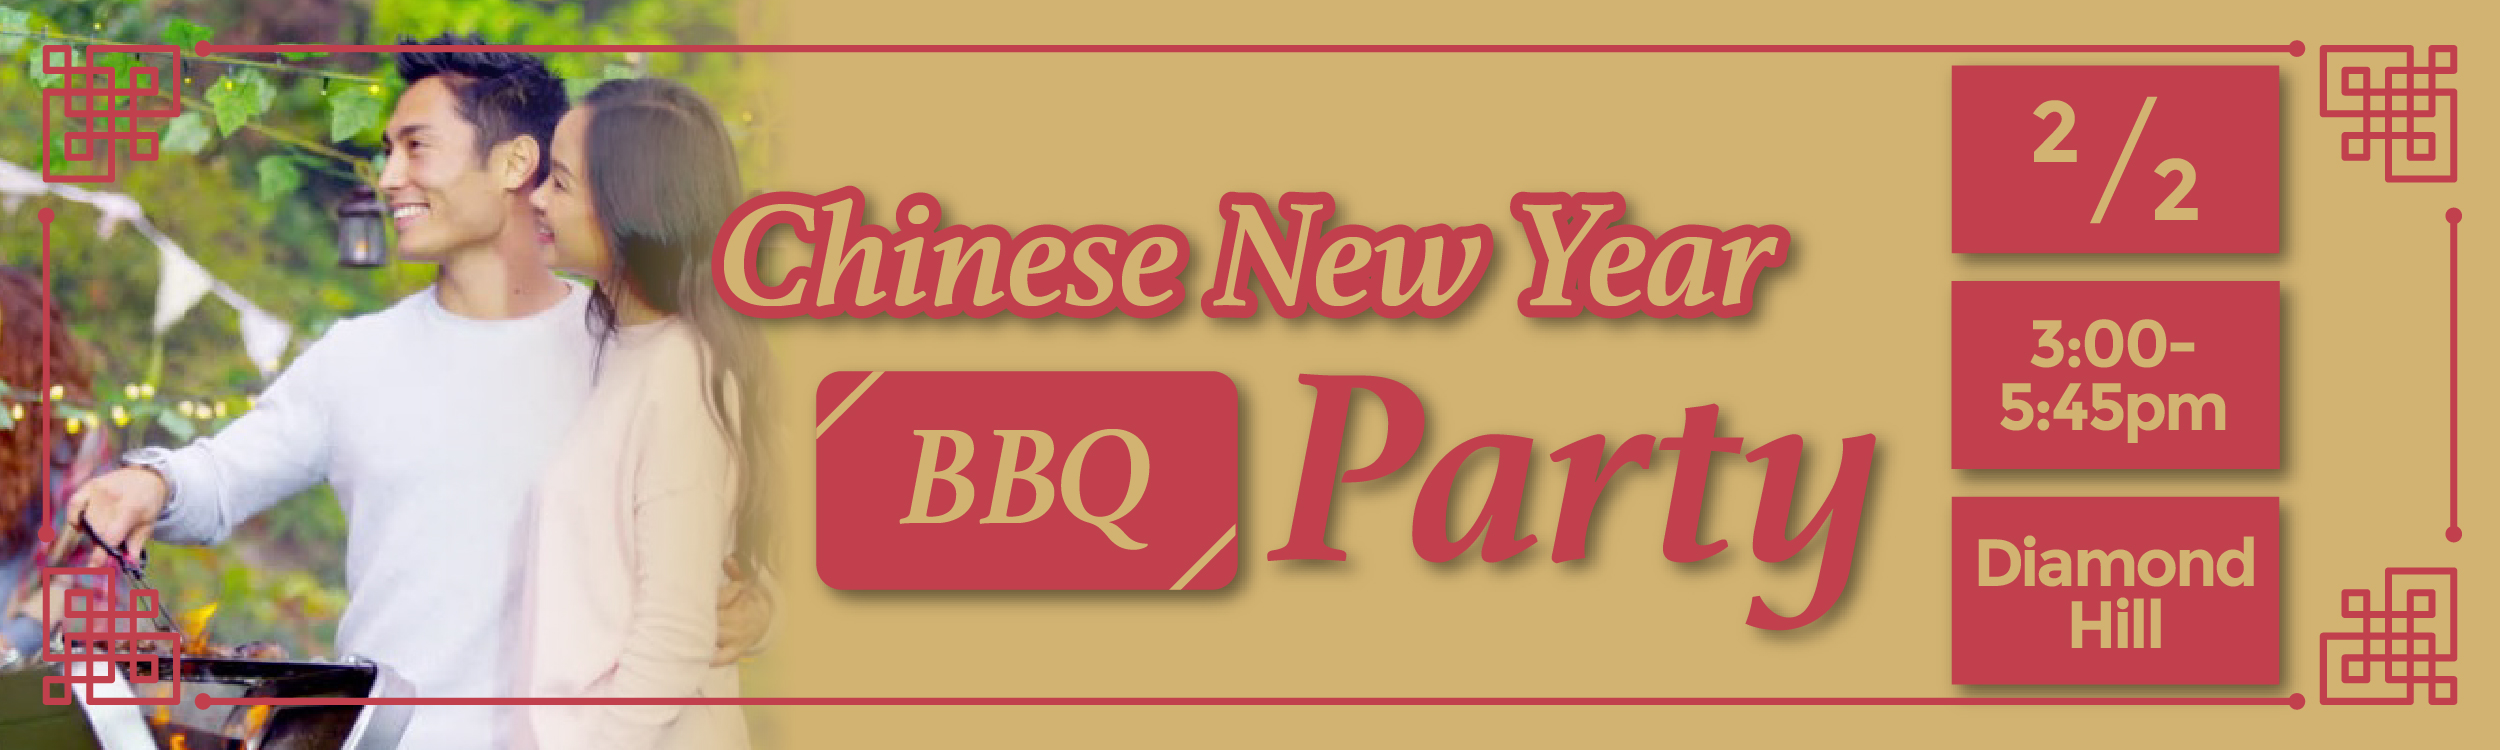 最新Speed Dating約會消息: Chinese New Year BBQ Party